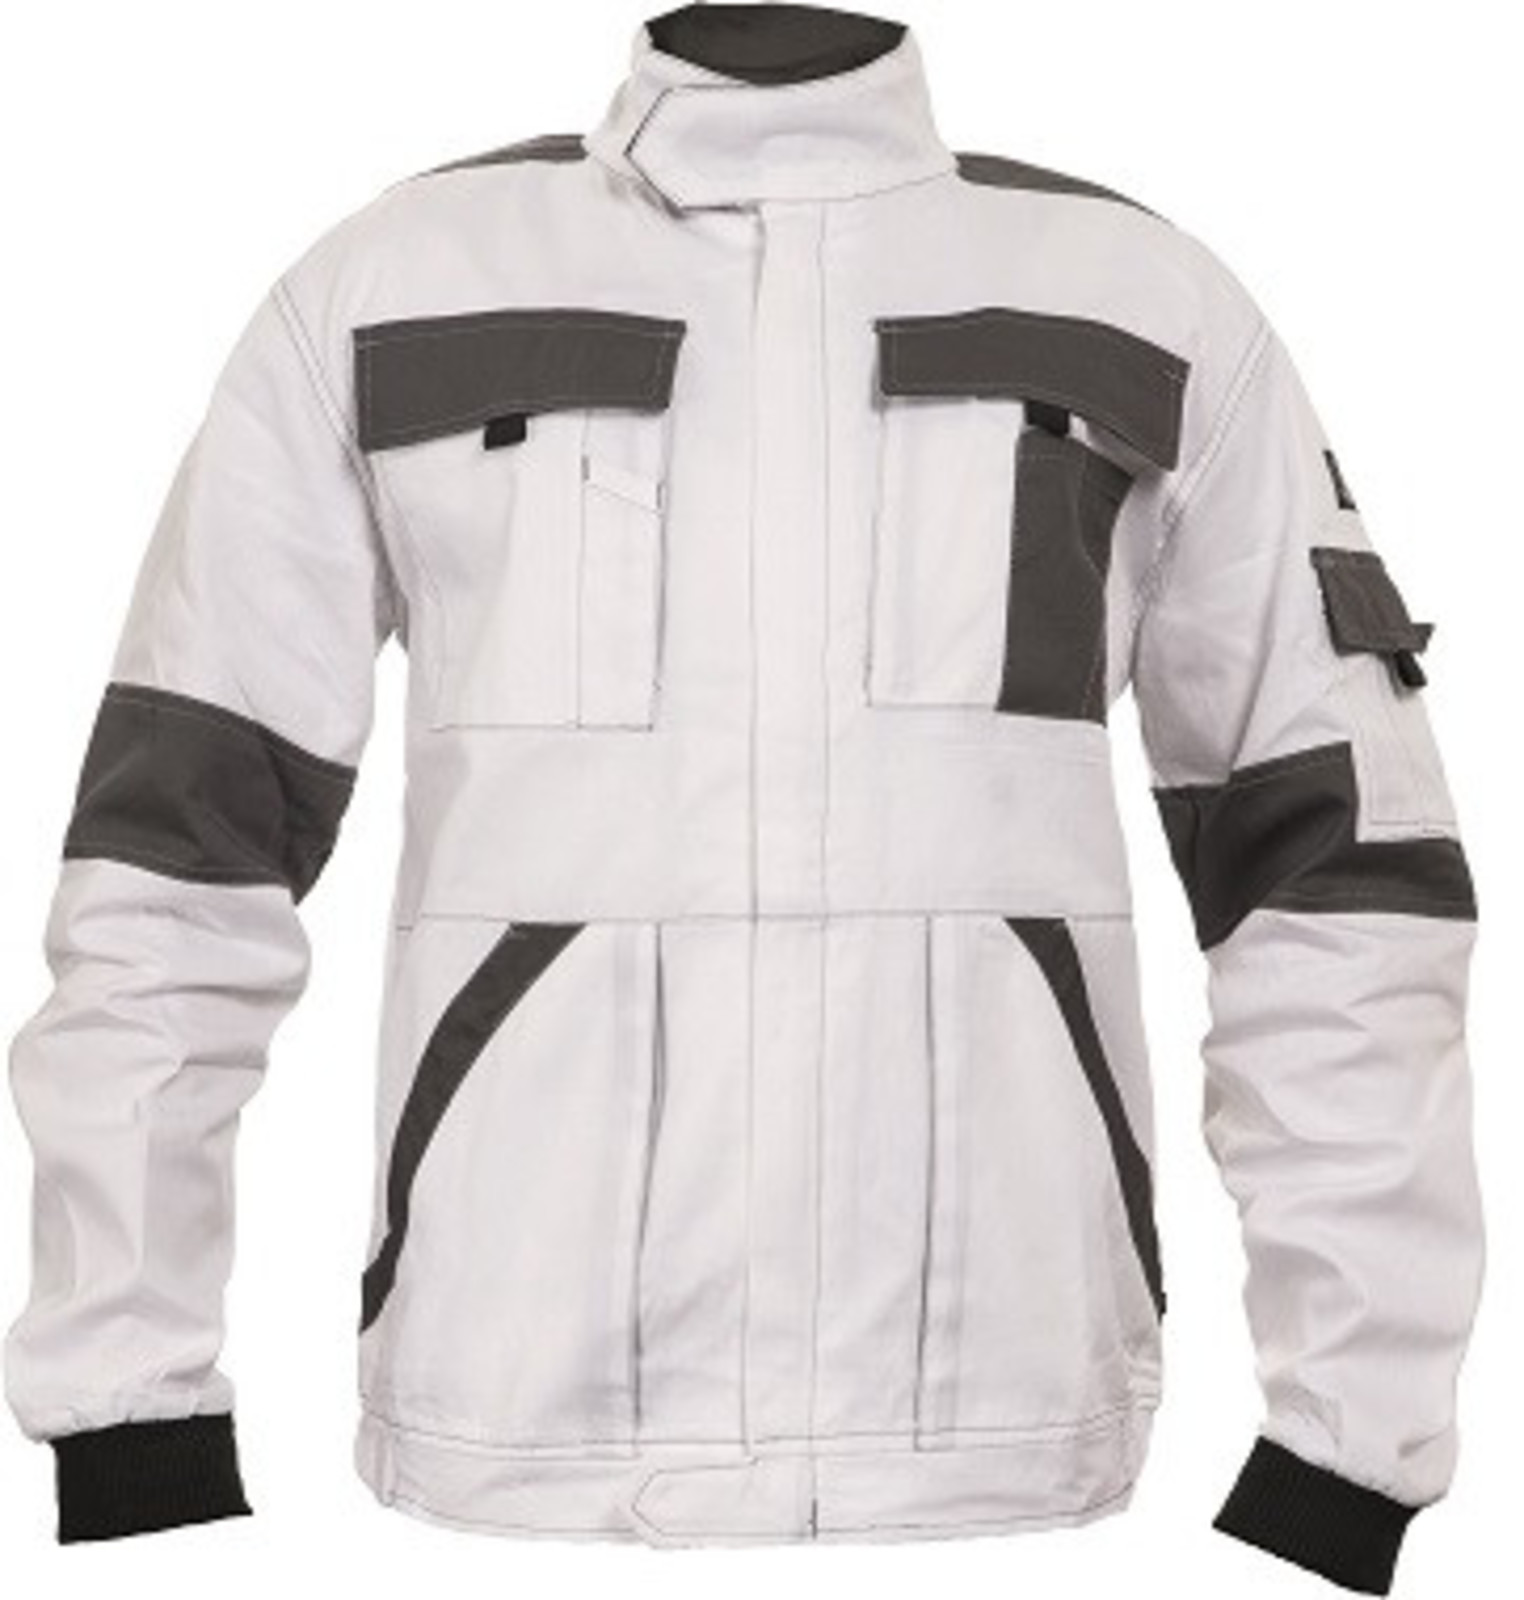 Tenšia bavlnená montérková bunda Max Summer  - veľkosť: 52, farba: biela/sivá